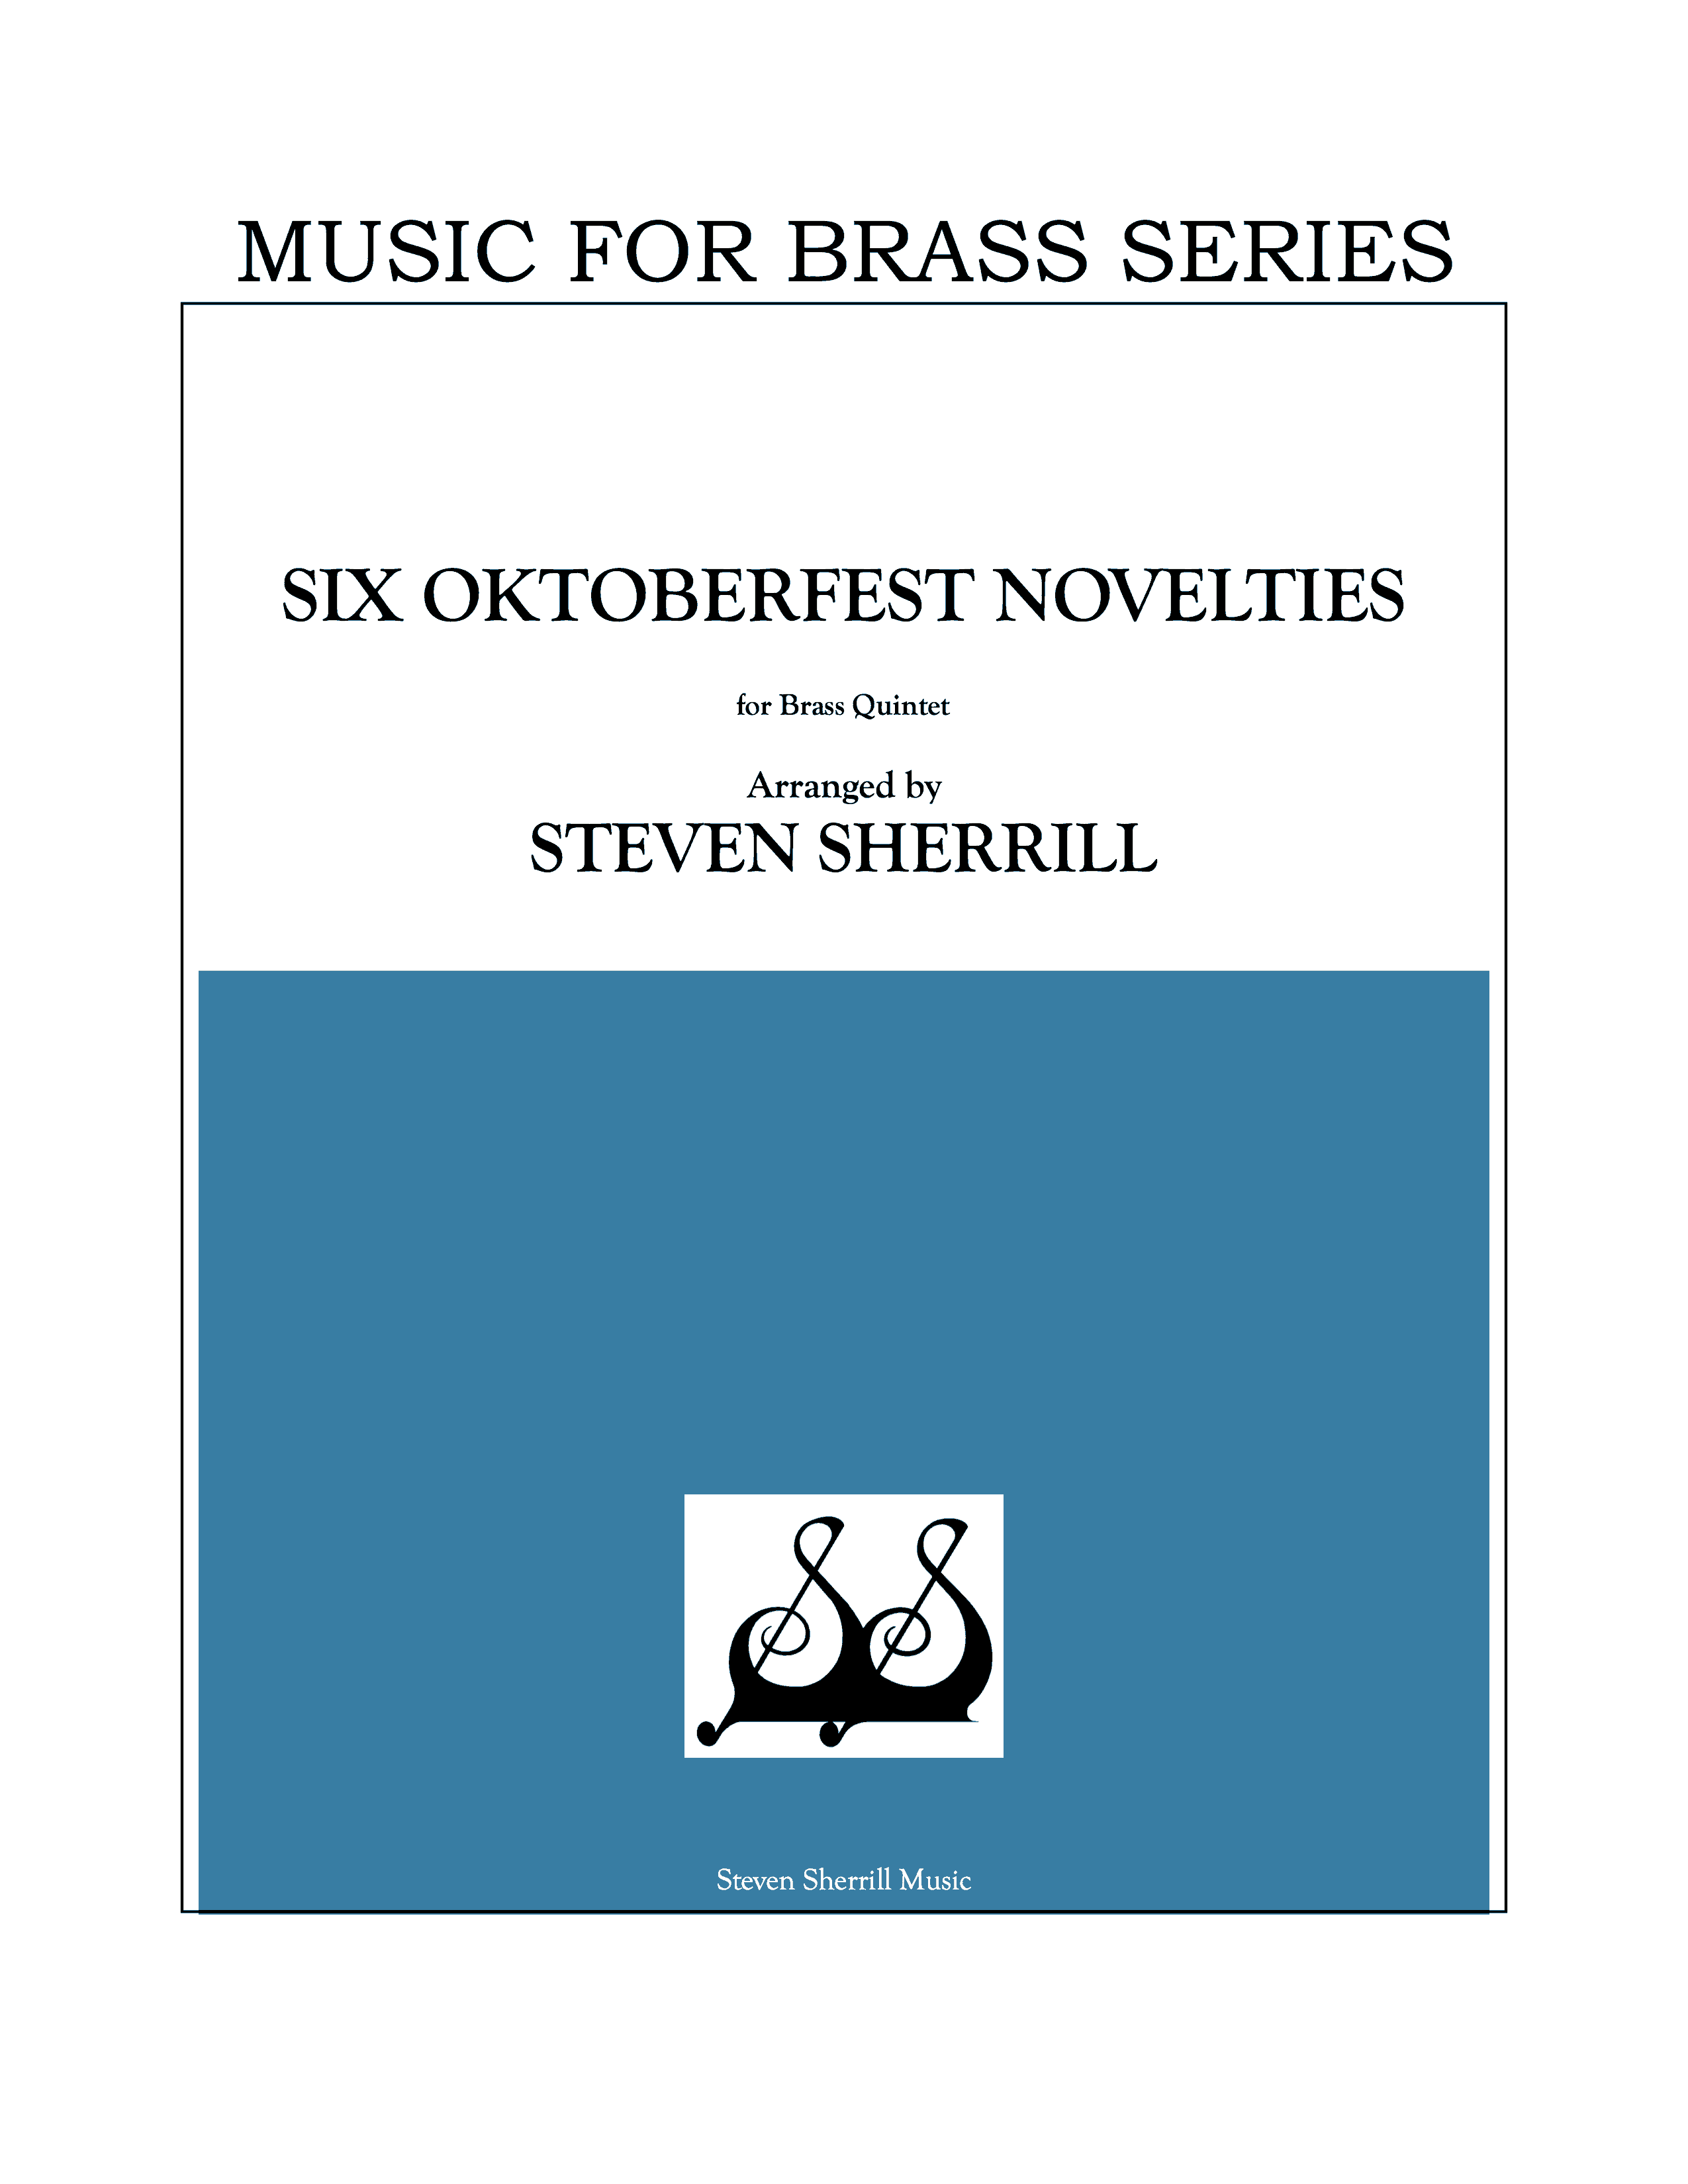 Six Oktoberfest Novelties for Brass Quintet cover page